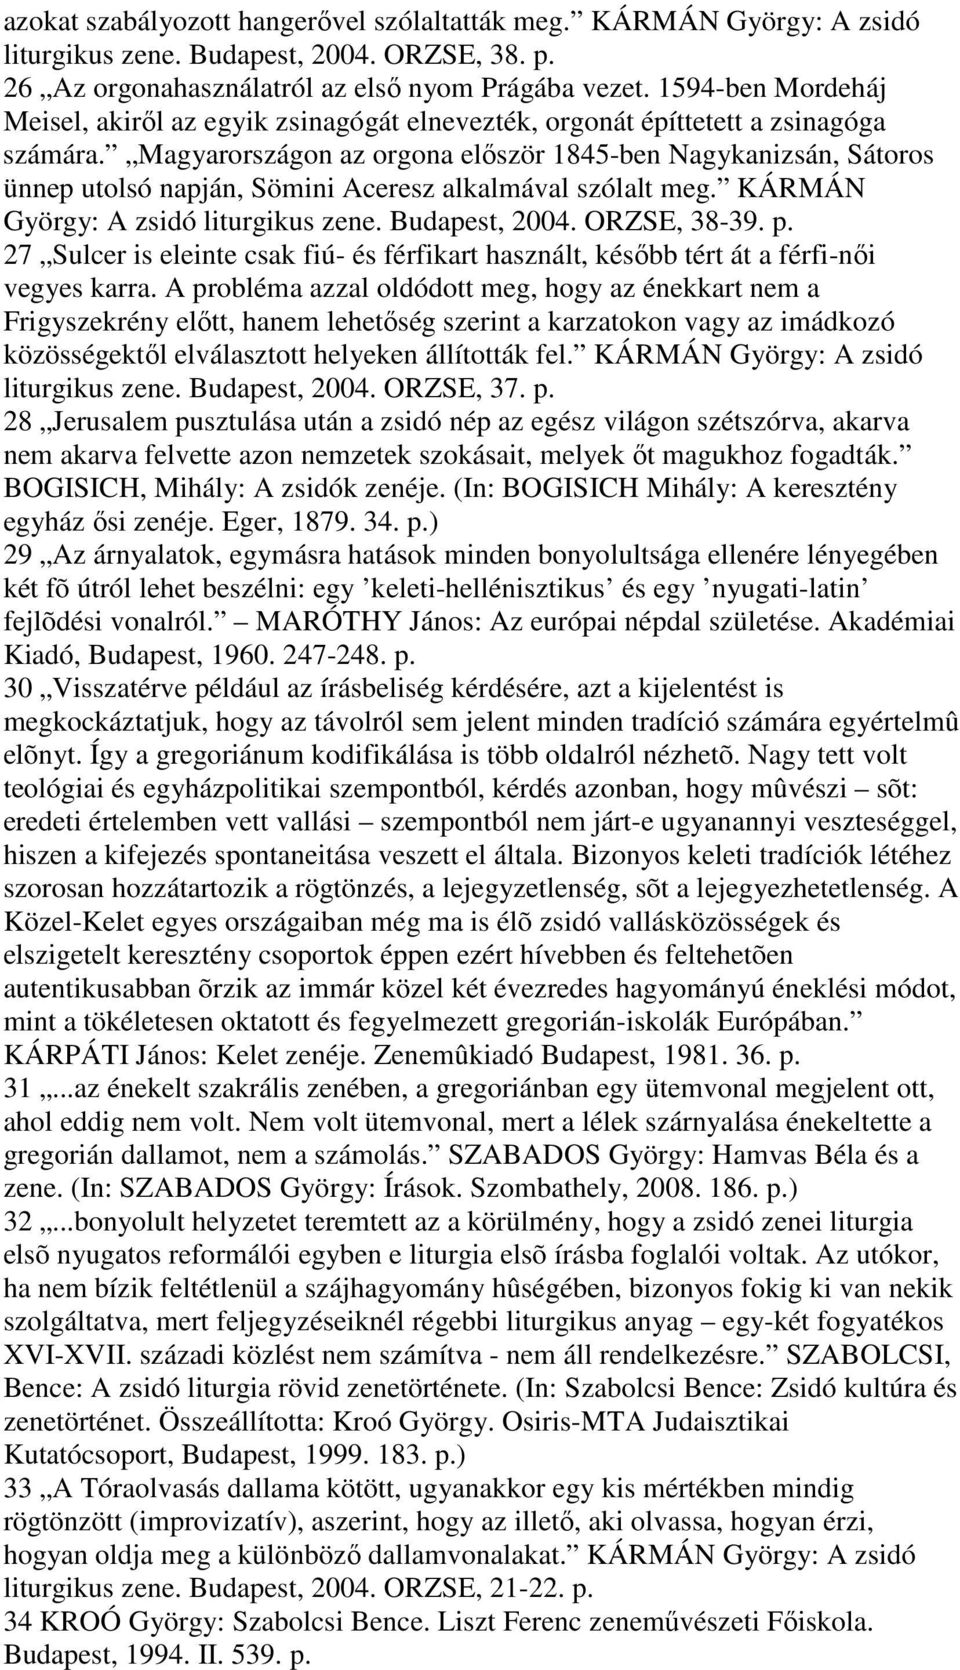 Magyarországon az orgona elıször 1845-ben Nagykanizsán, Sátoros ünnep utolsó napján, Sömini Aceresz alkalmával szólalt meg. KÁRMÁN György: A zsidó liturgikus zene. Budapest, 2004. ORZSE, 38-39. p.